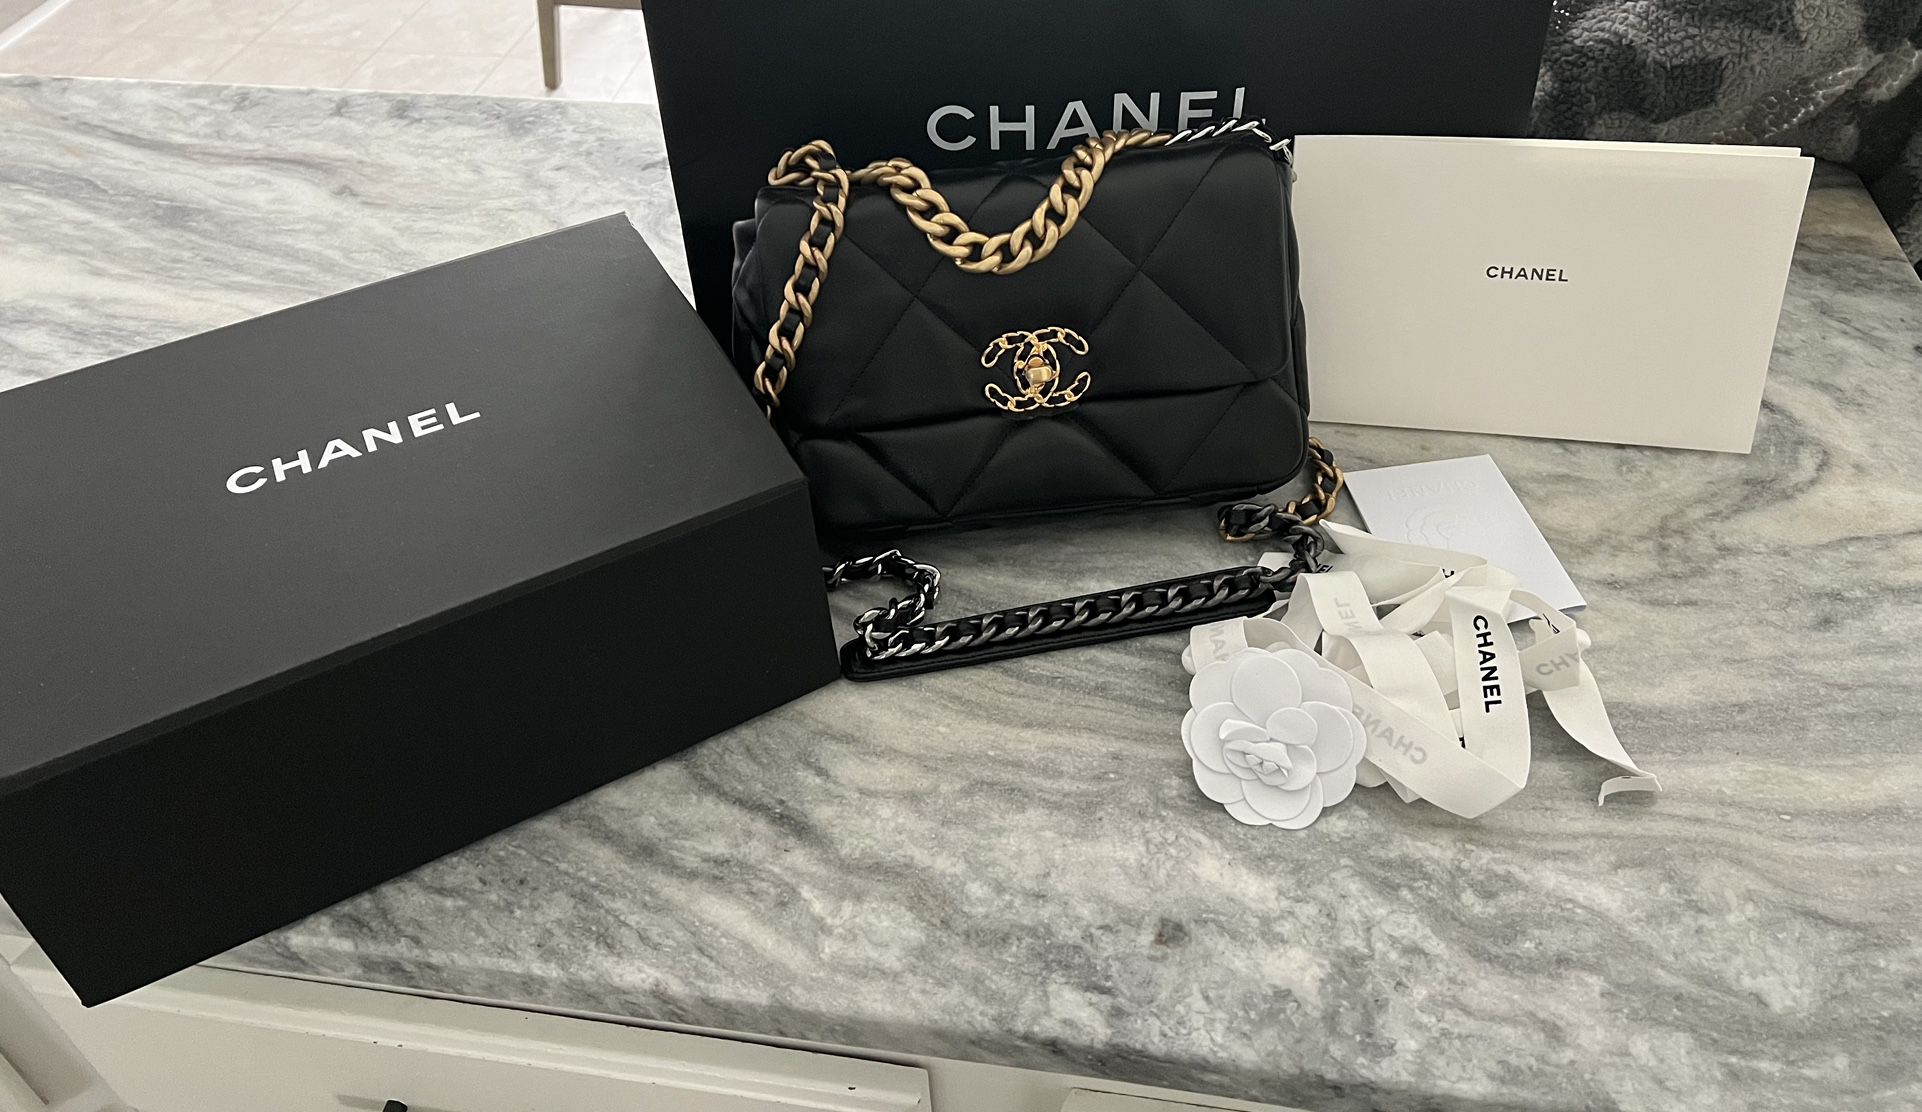 DEAL OF THE WEEK!! Chanel Handbag